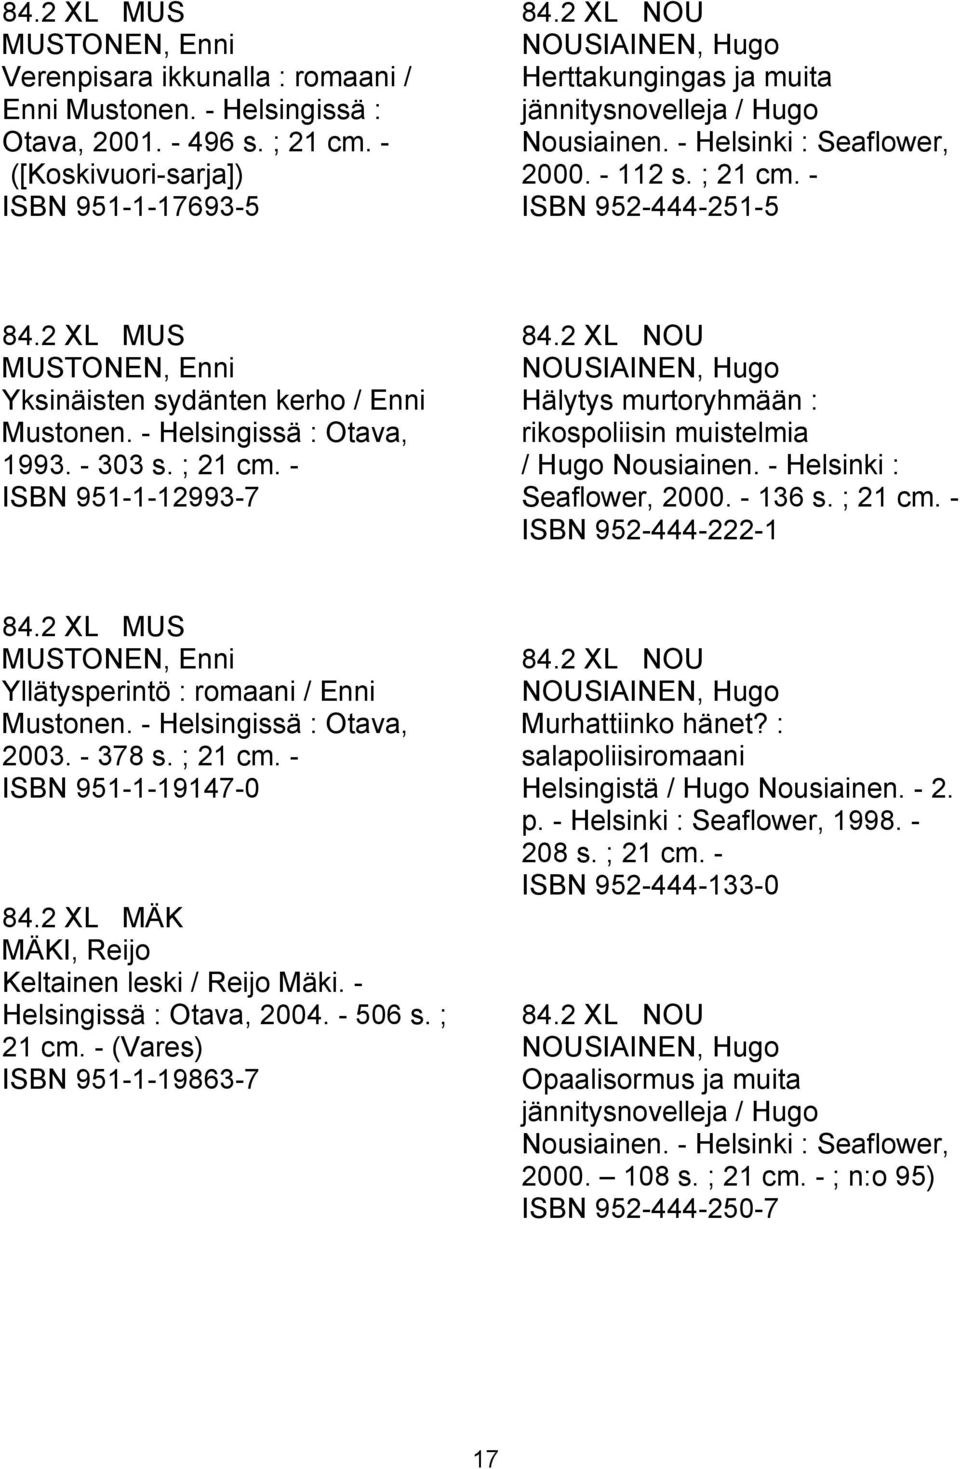 2 XL MUS MUSTONEN, Enni Yksinäisten sydänten kerho / Enni Mustonen. - Helsingissä : Otava, 1993. - 303 s. ; 21 cm. - ISBN 951-1-12993-7 84.